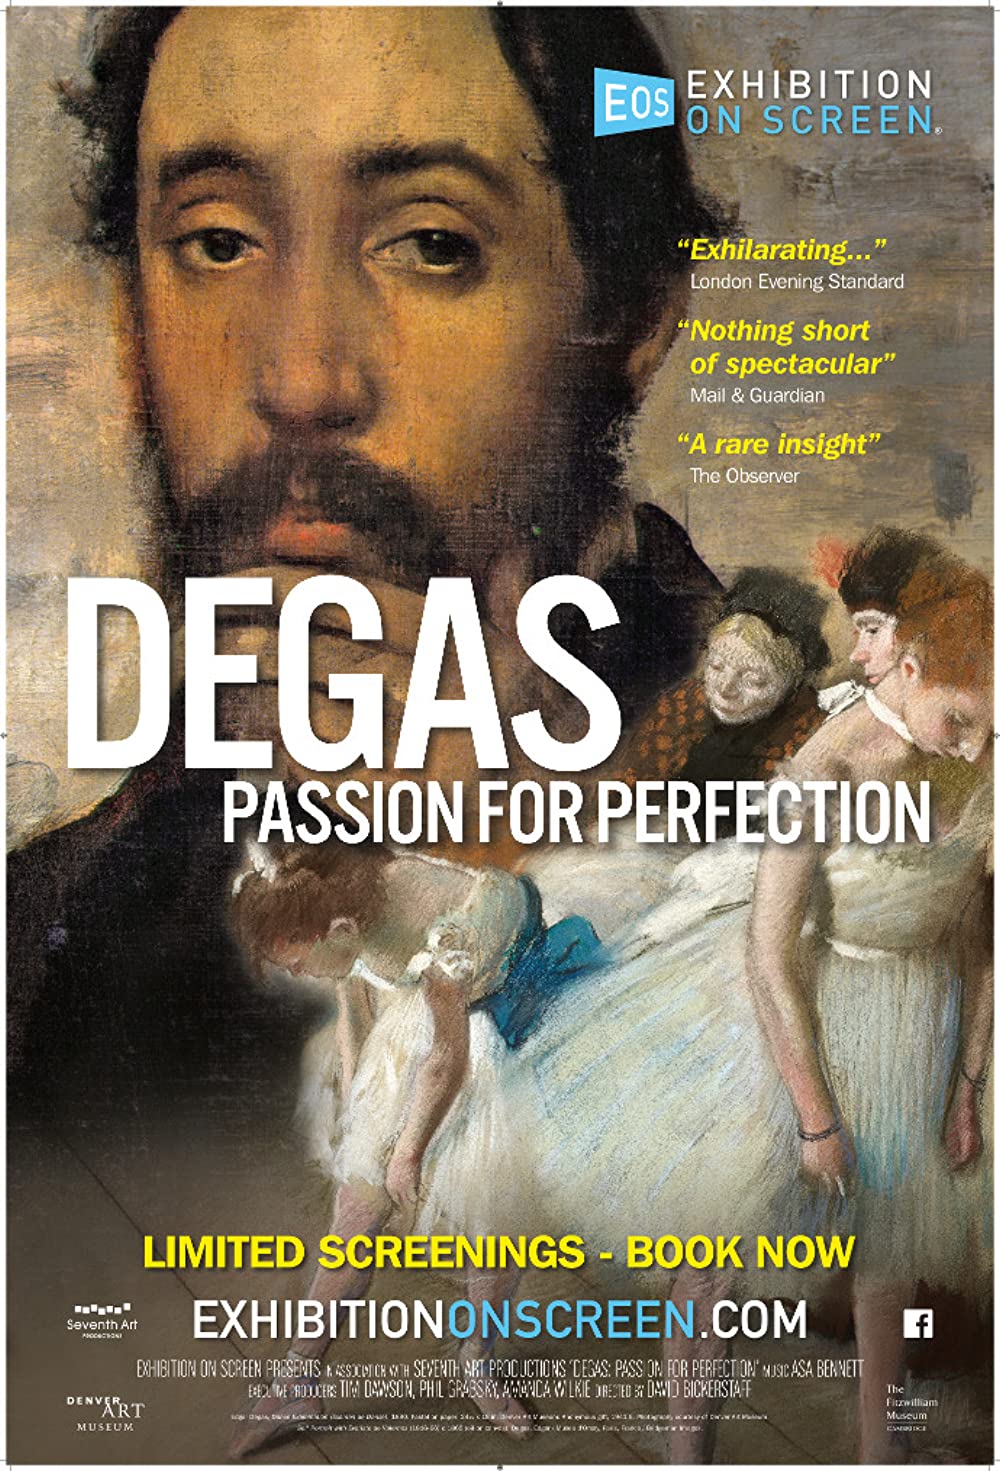 ดูหนังออนไลน์ฟรี Exhibition on Screen Degas Passion For Perfection (2018) หนังเต็มเรื่อง หนังมาสเตอร์ ดูหนังHD ดูหนังออนไลน์ ดูหนังใหม่